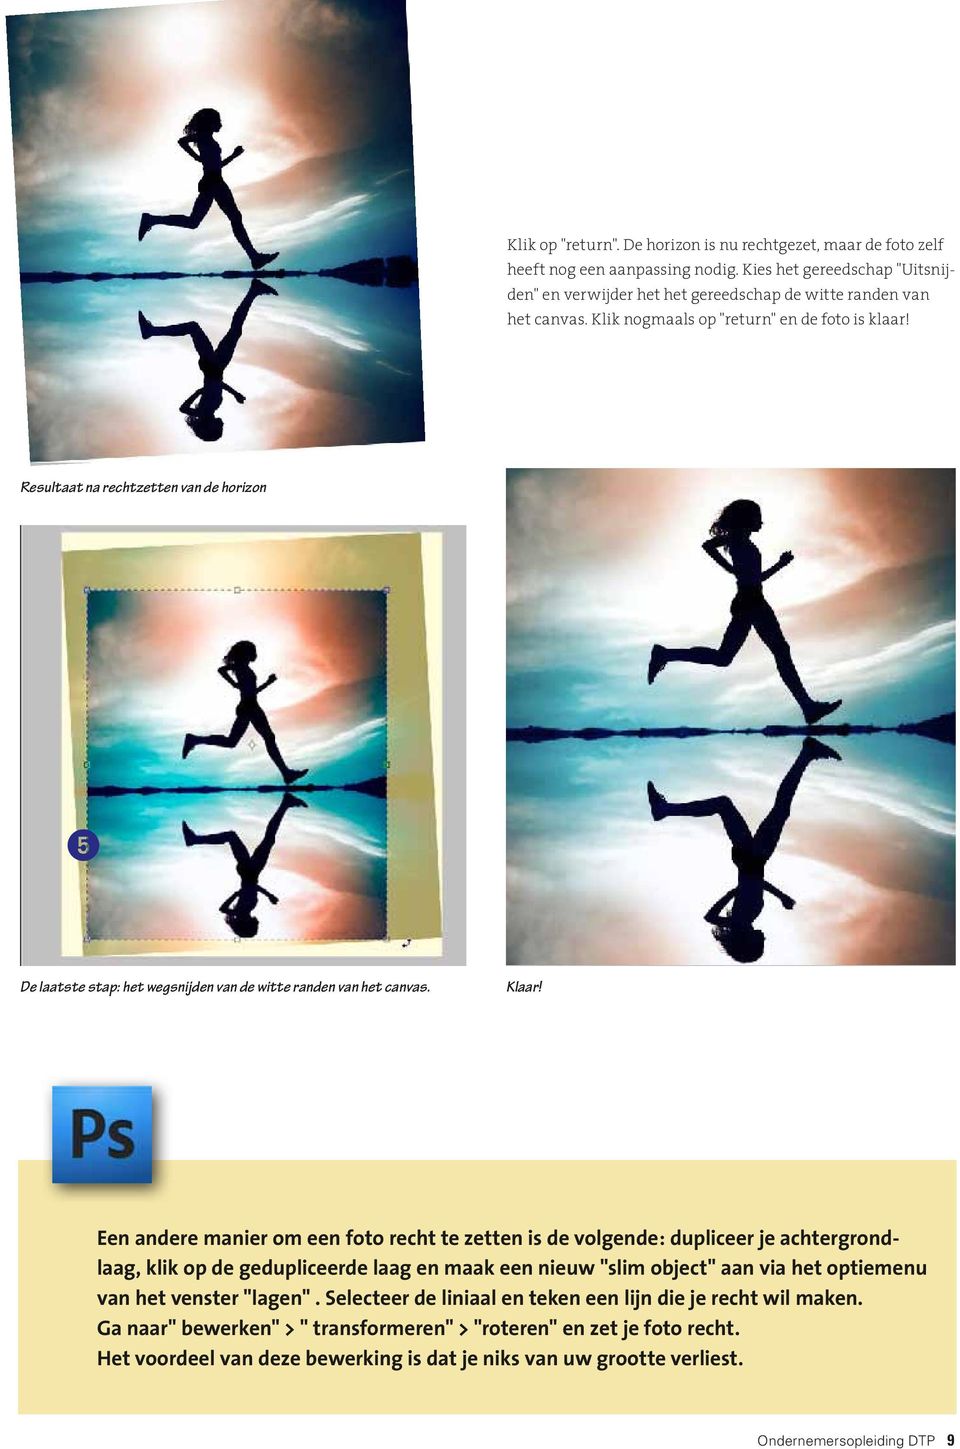 Een andere manier om een foto recht te zetten is de volgende: dupliceer je achtergrondlaag, klik op de gedupliceerde laag en maak een nieuw "slim object" aan via het optiemenu van het venster